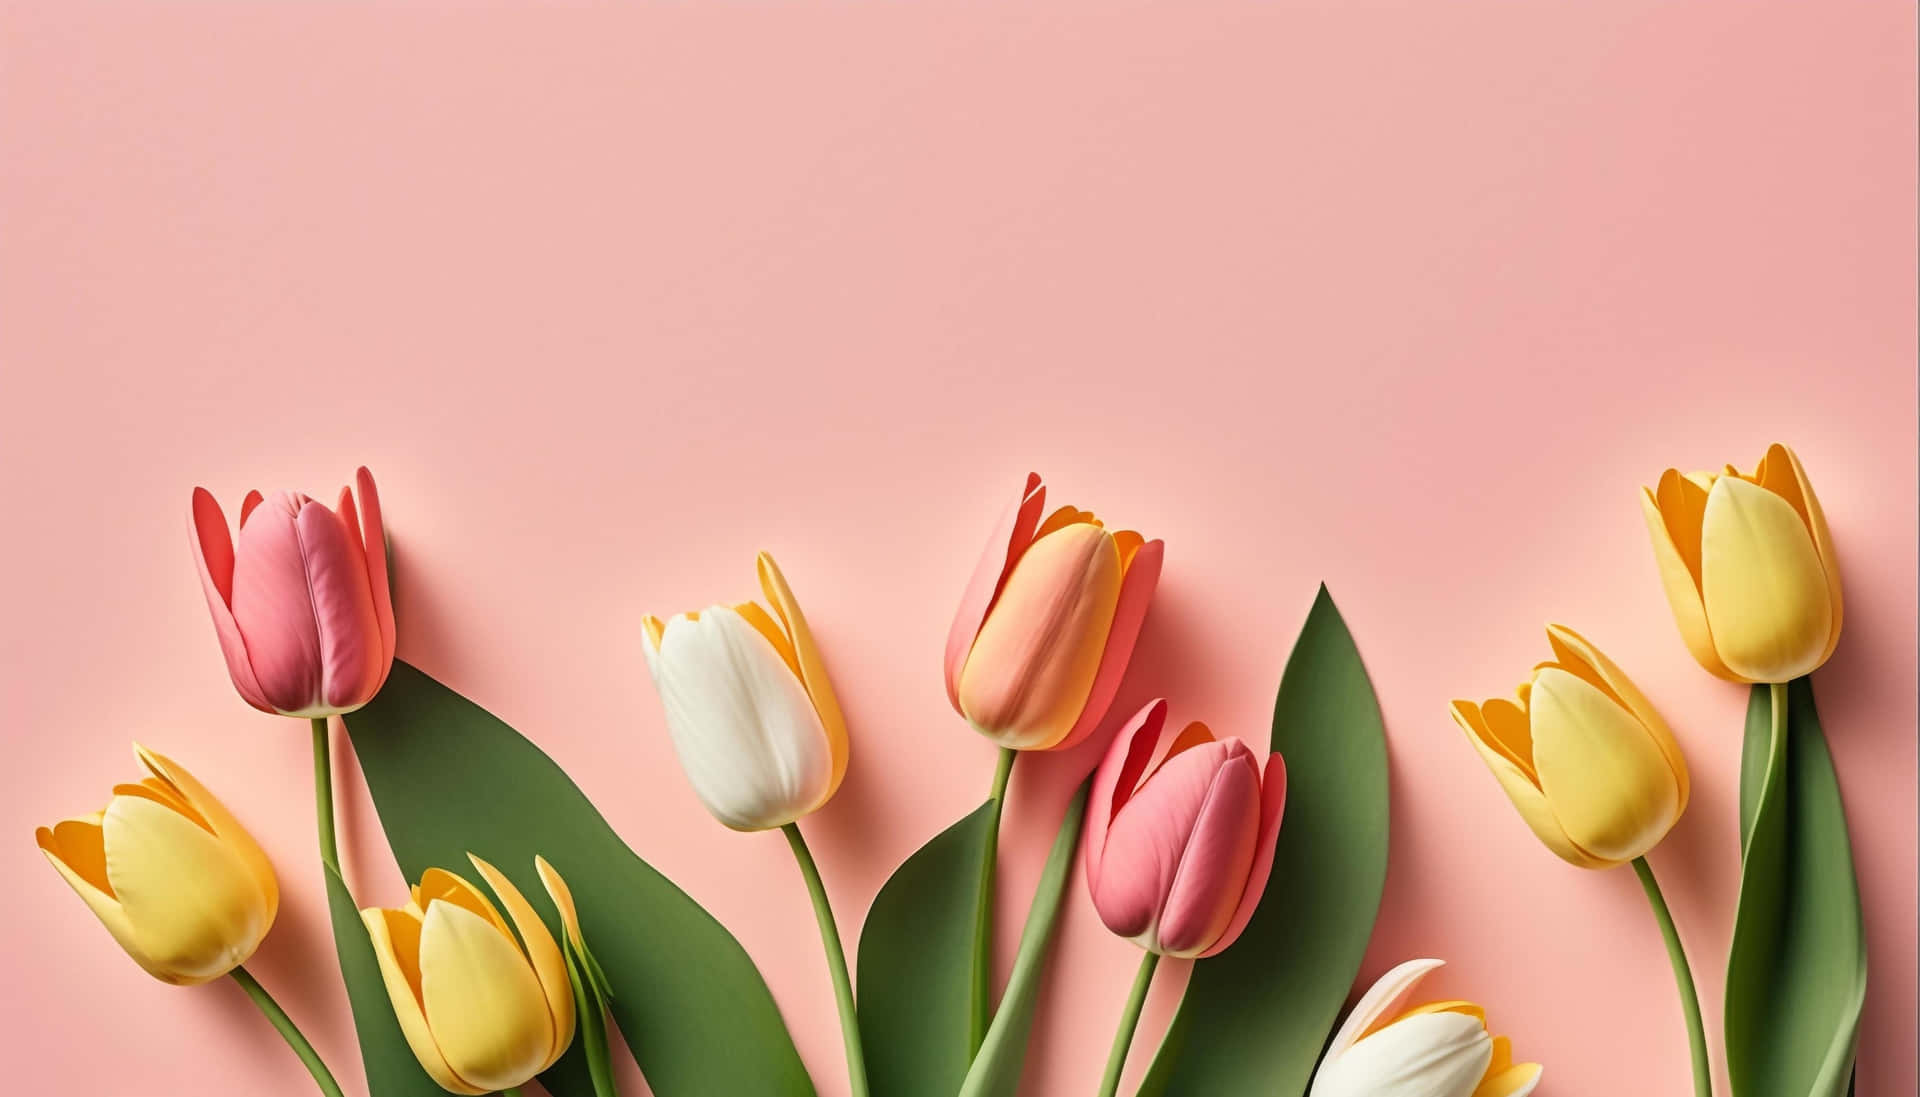 Pastel_ Tulips_ Arrangement Wallpaper